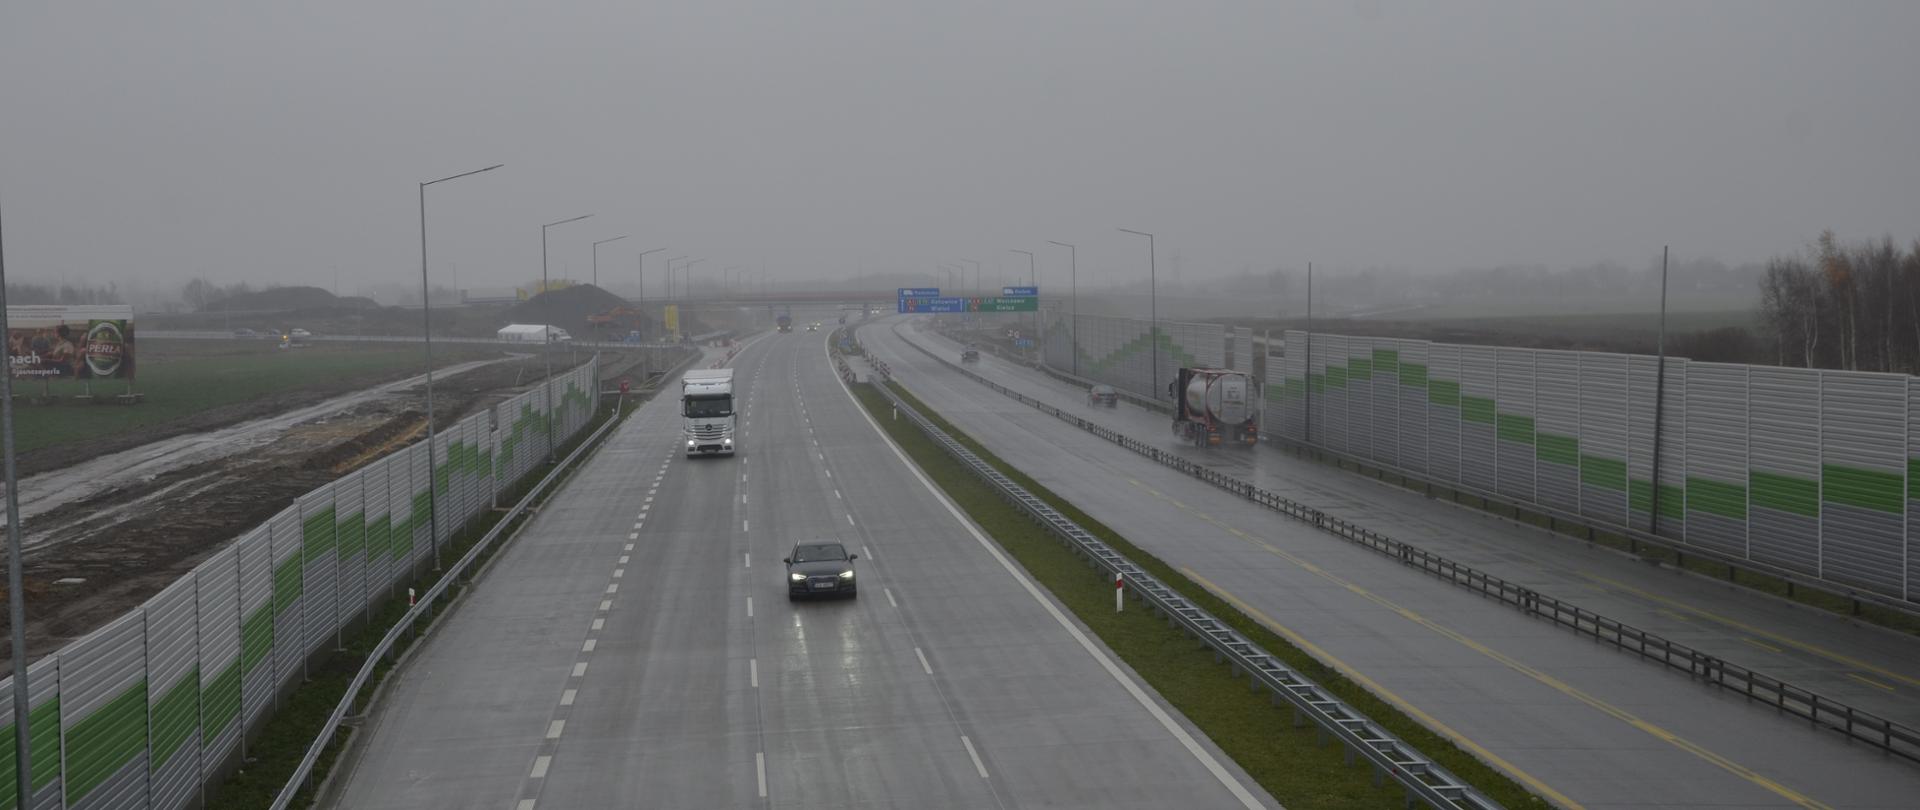 Widoczna skąpana w deszczy wschodni jezdnia autostrady - po lewej stronie, po prawej jezdnia zachodnia. Po obu stronach drogi widoczne są szaro - zielone ekrany akustyczne. W tle widoczny wiadukt łącznicy Warszawa - Katowice.